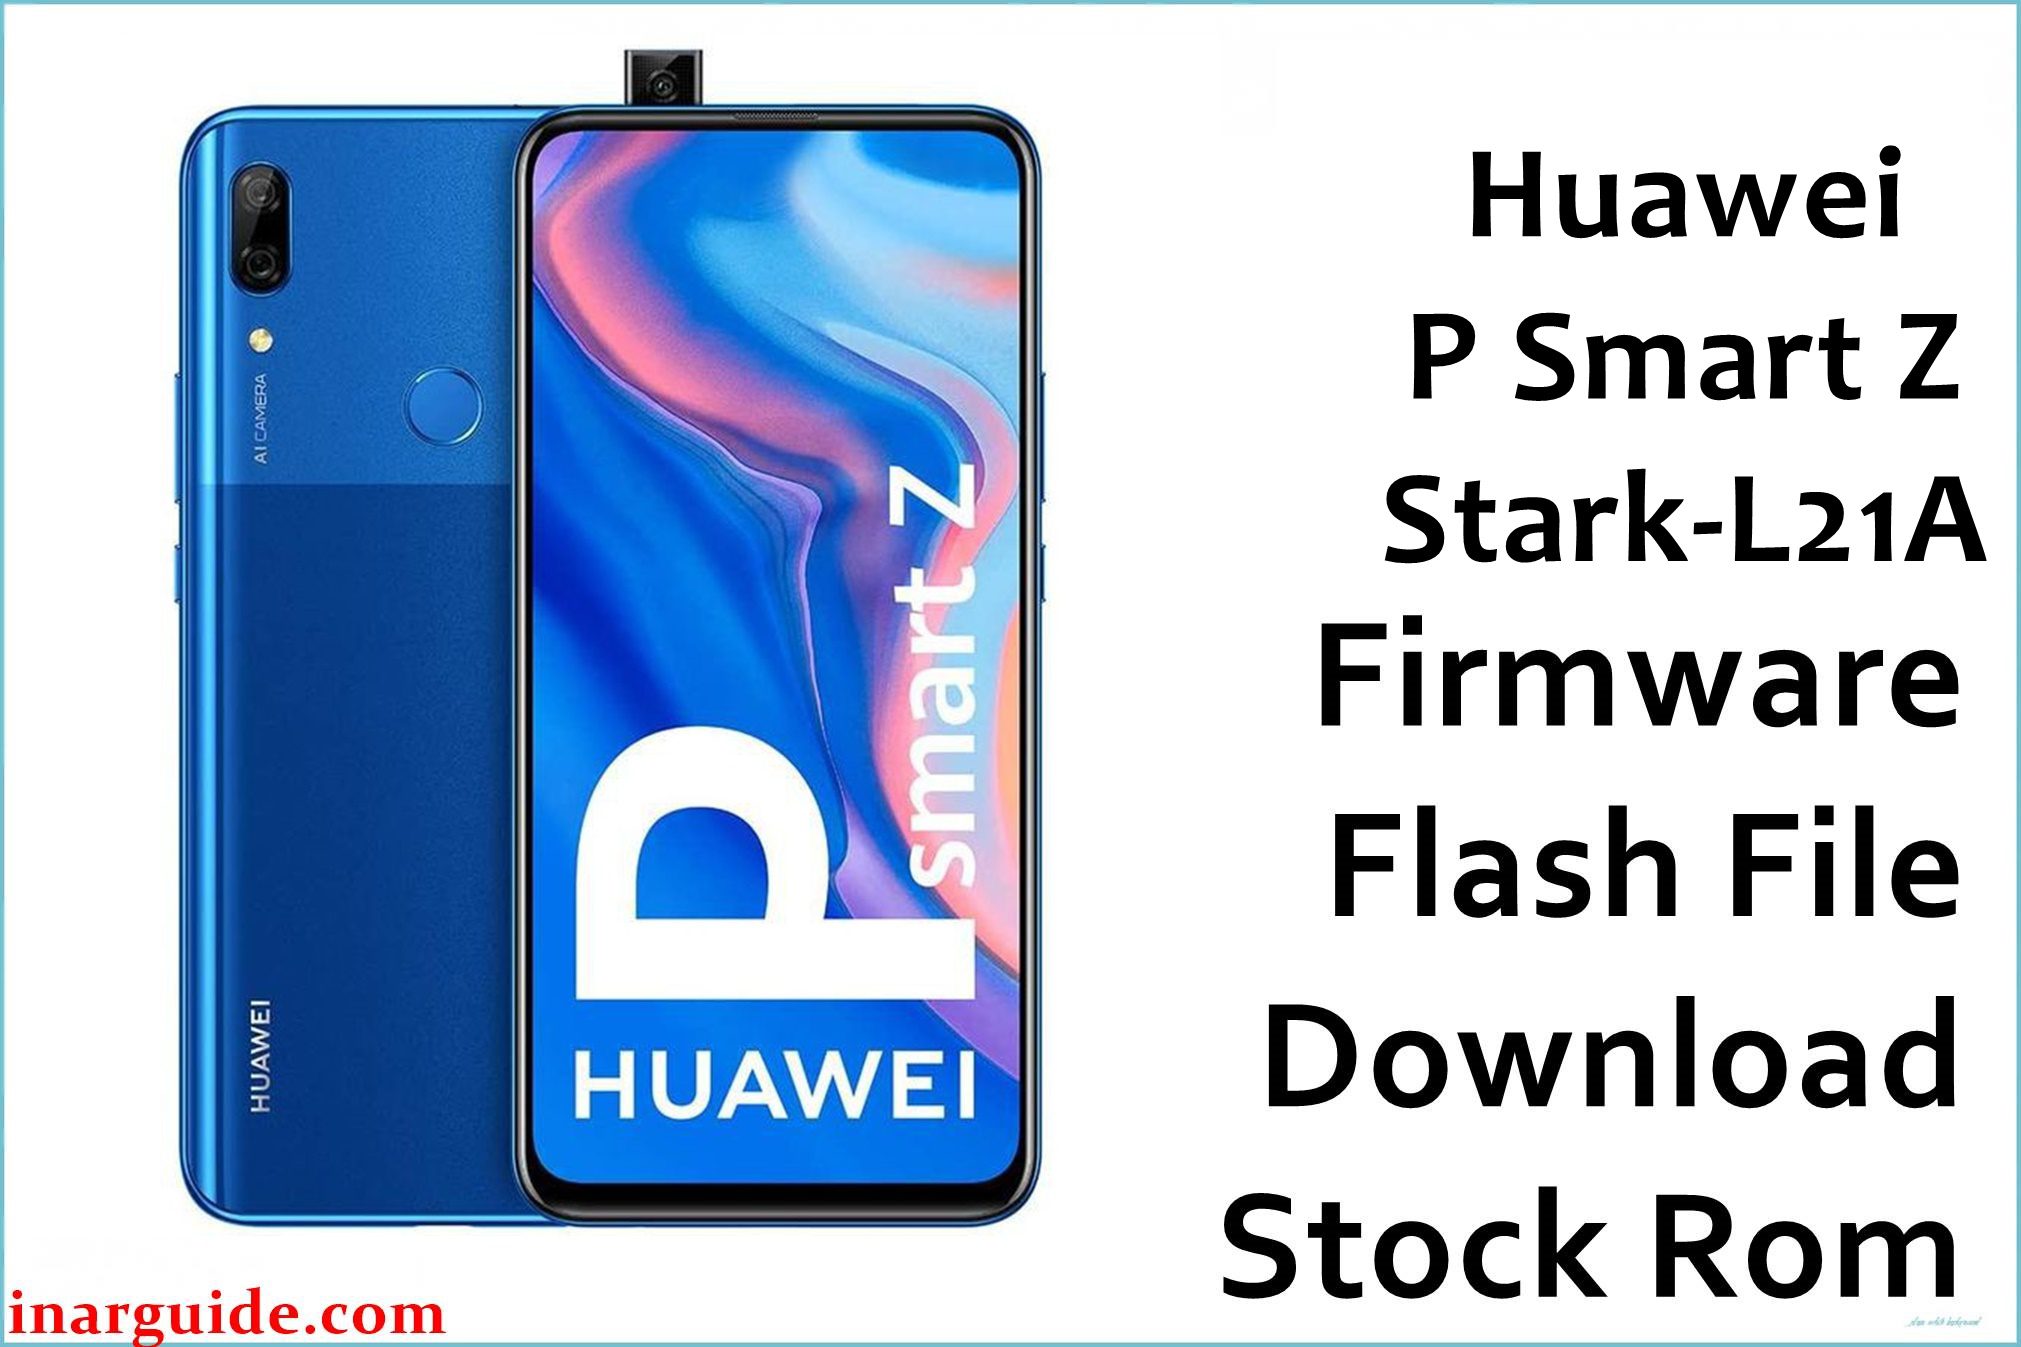 Huawei P Smart Z Stark L21A